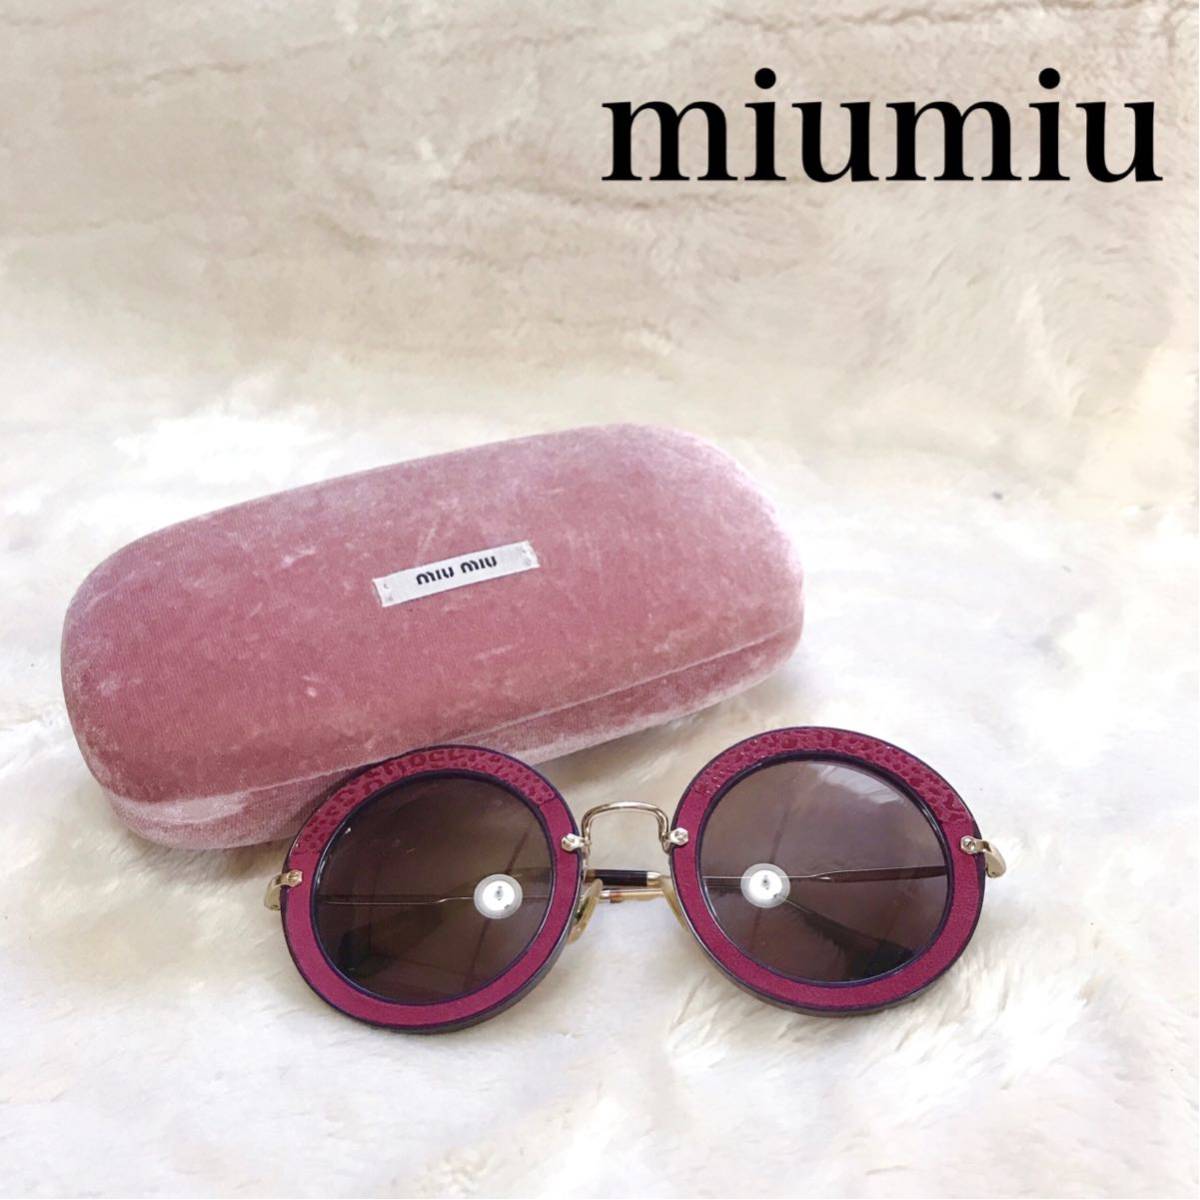 miumiu ミュウミュウ サングラス 丸メガネ レオパード ピンク 箱付き